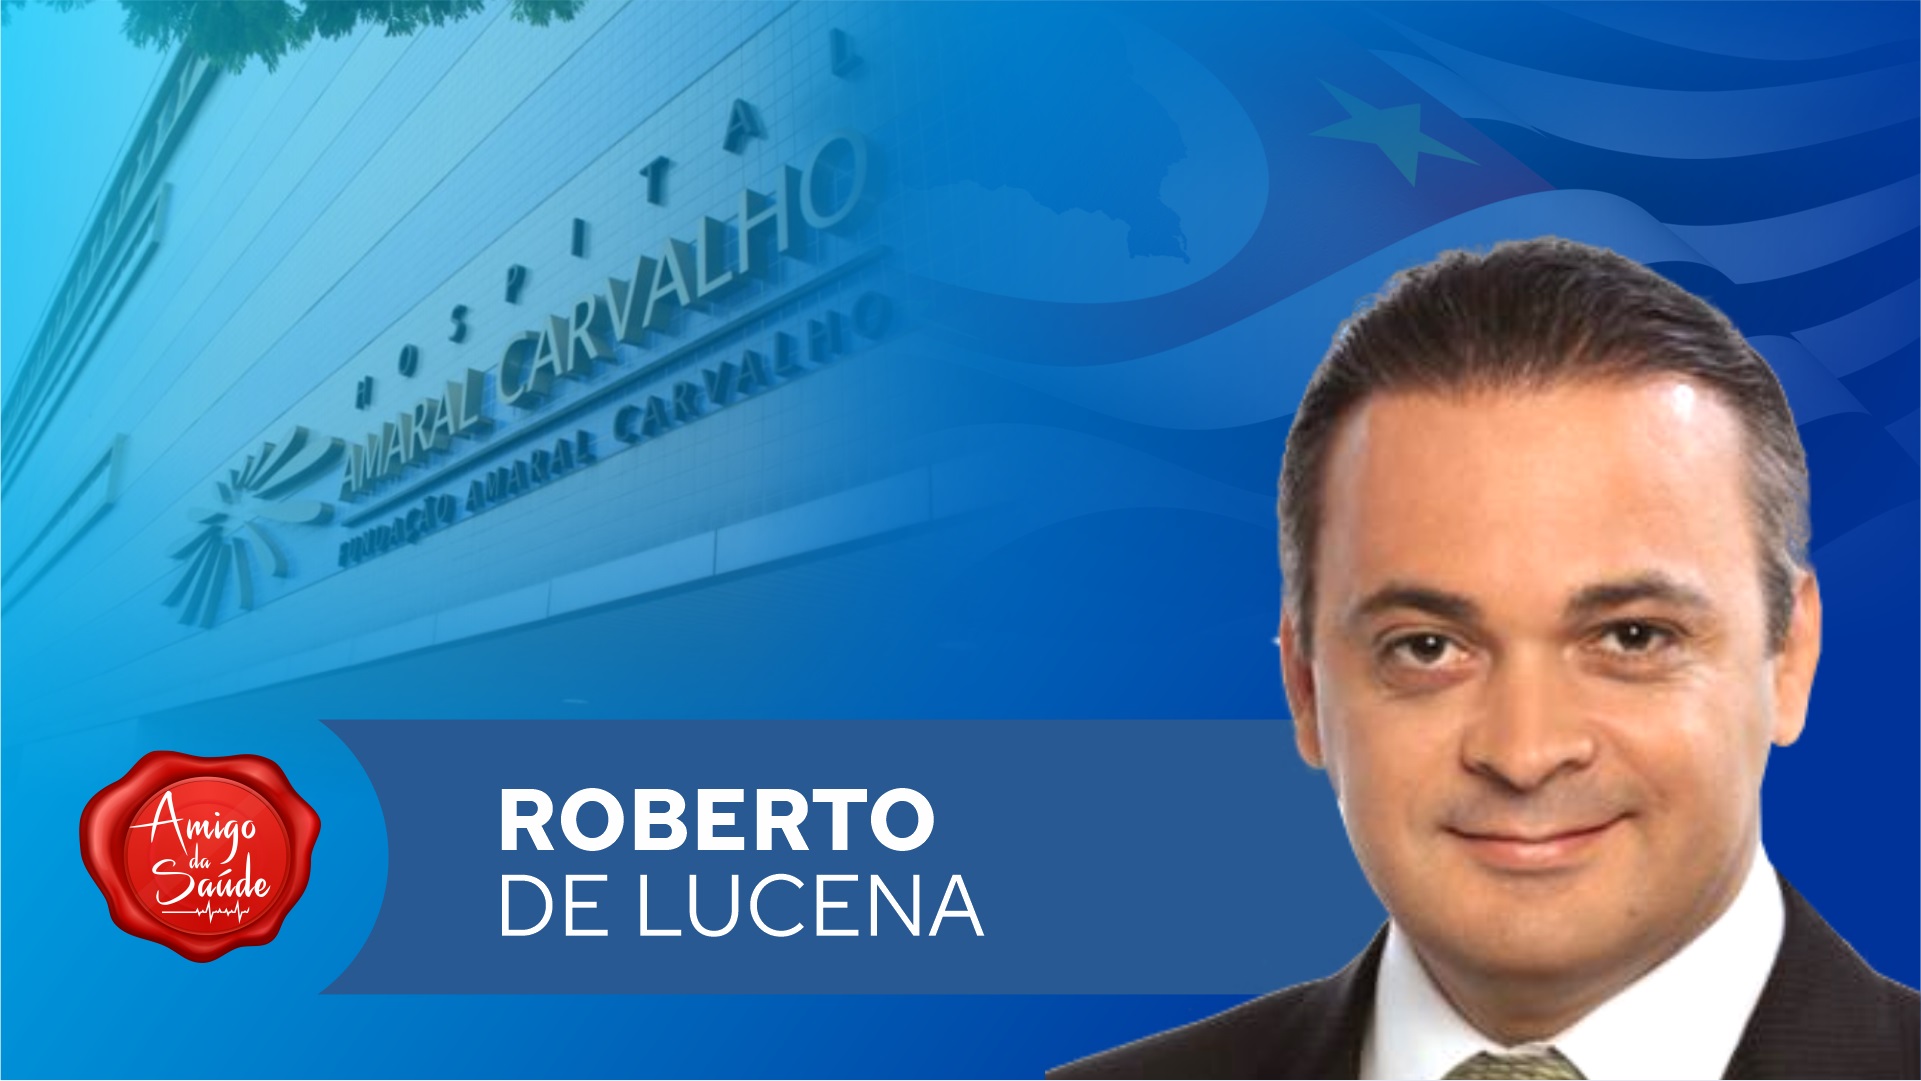 deputado-roberto-de-lucena-apoia-o-hospital-amaral-carvalho - Acao Comunicativa